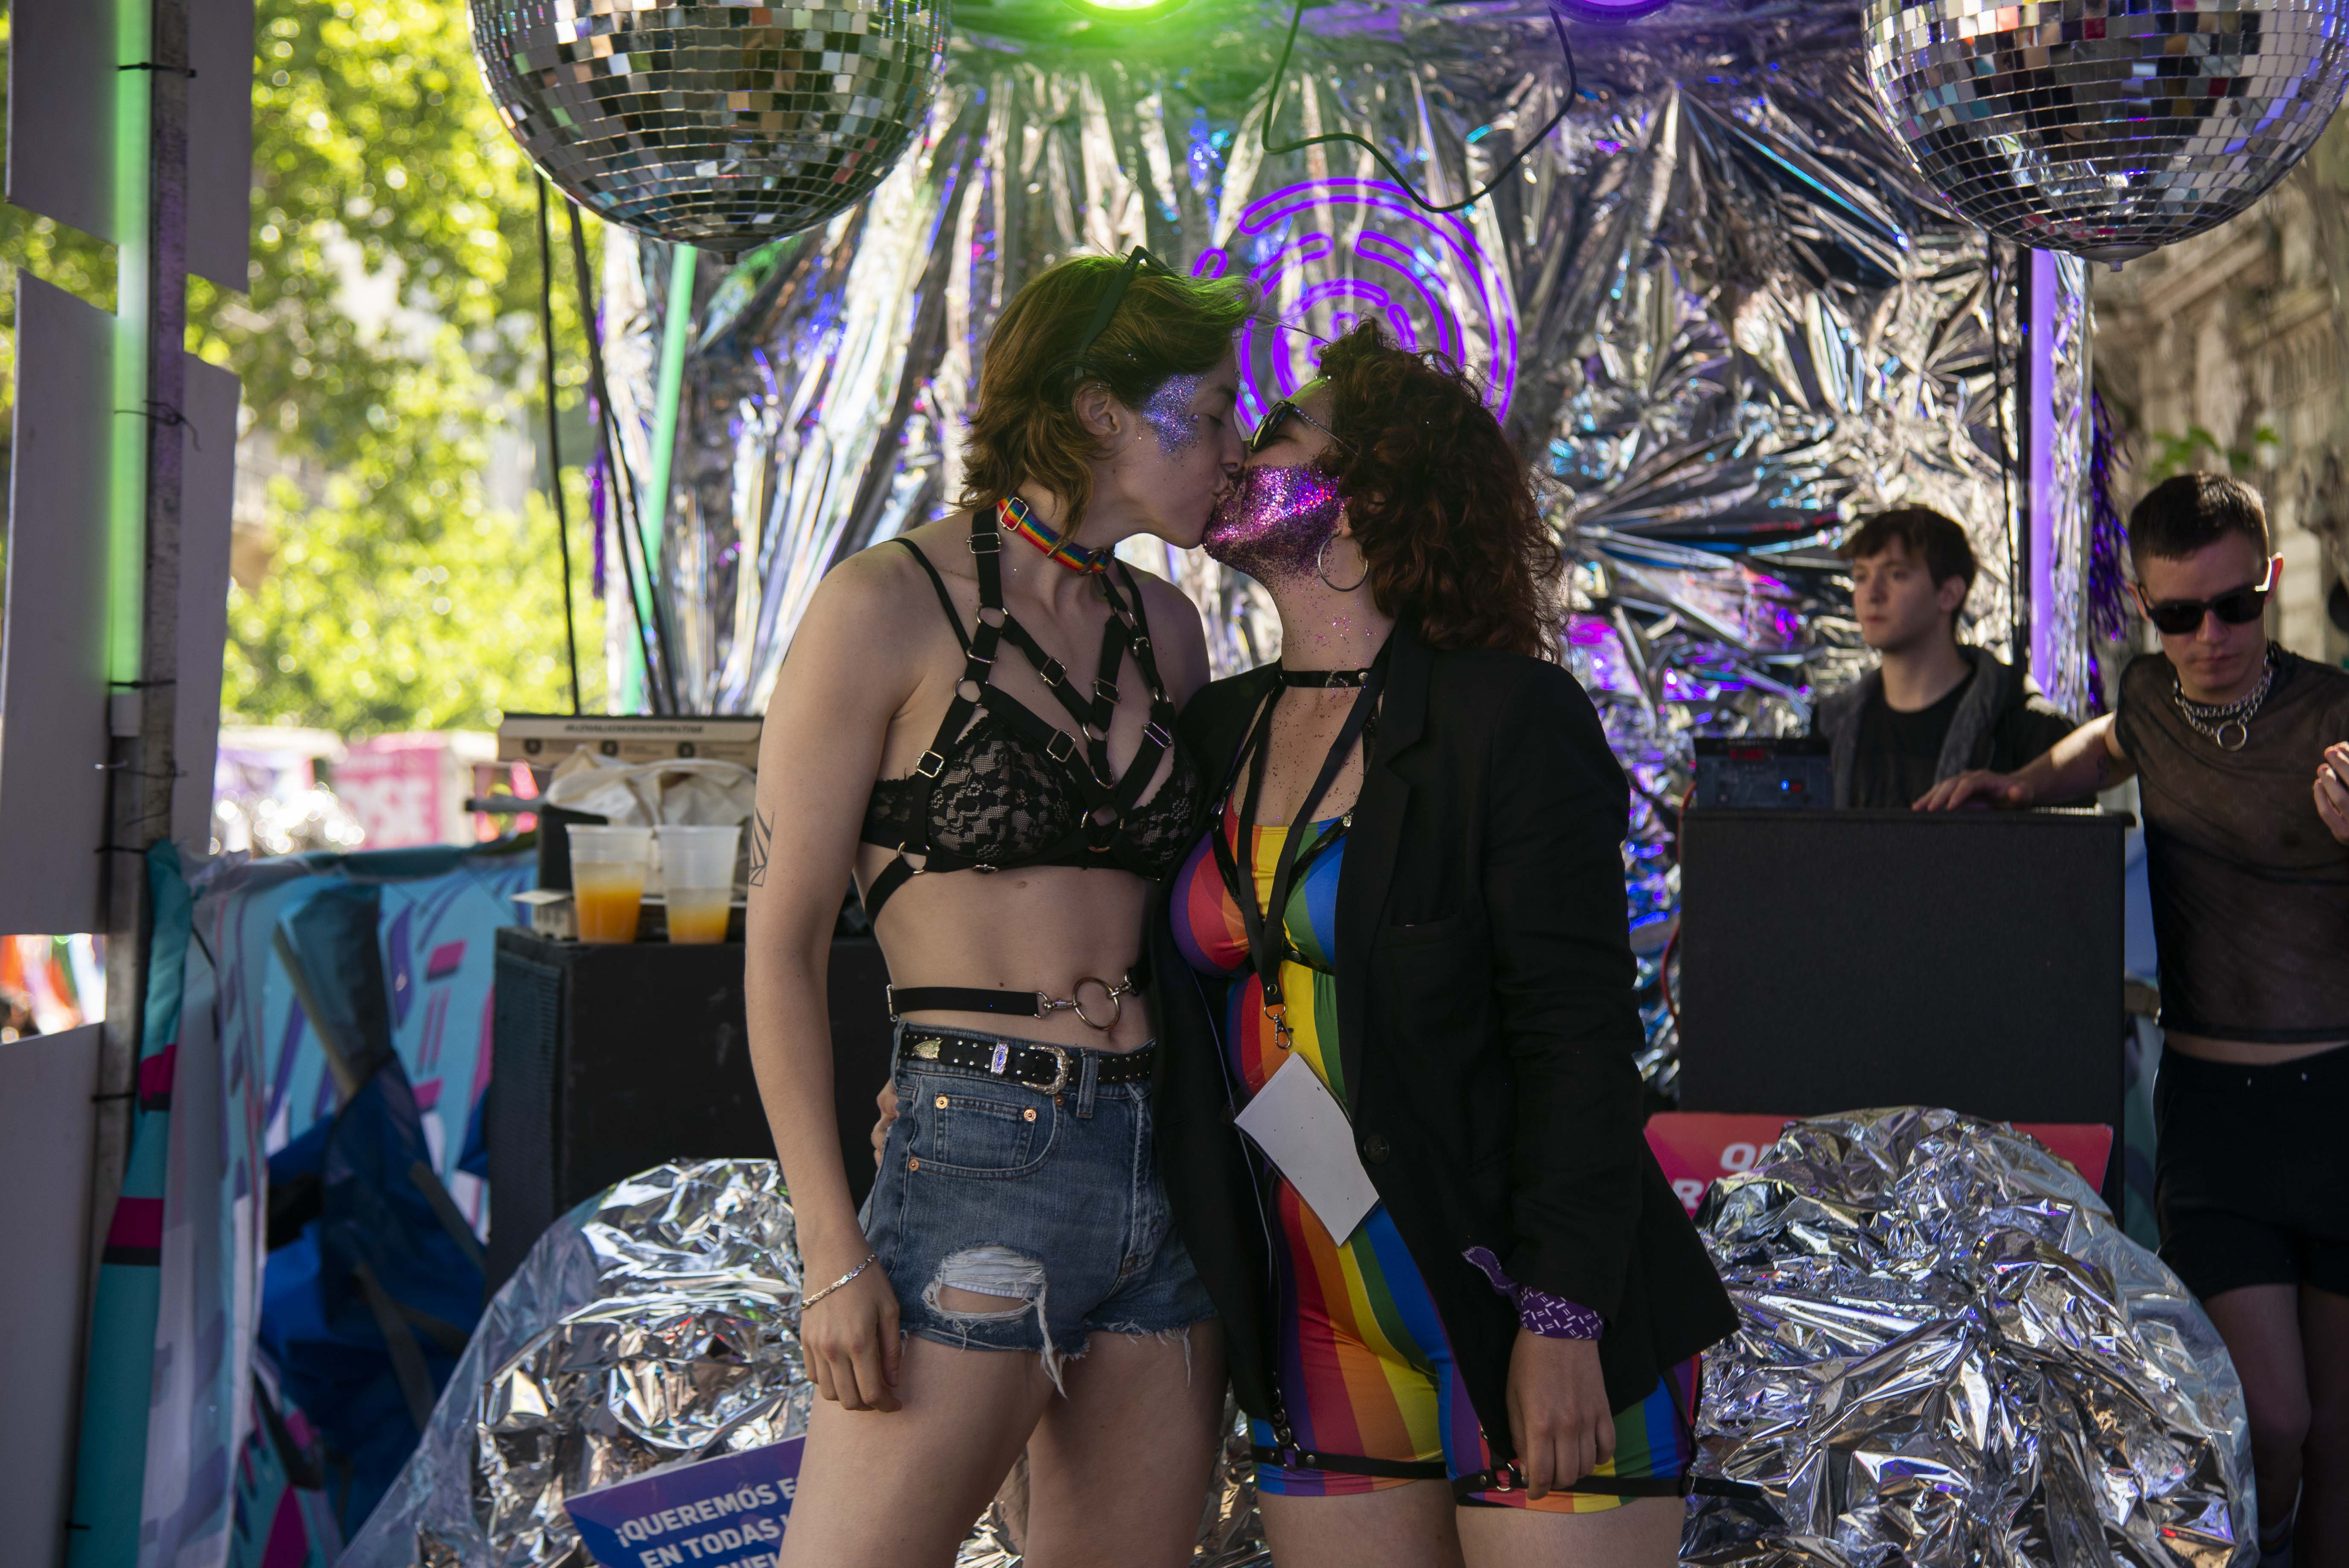 Un beso apasionado para celebrar el amor y la diversidad (Crédito: Cecilia Frenkel)